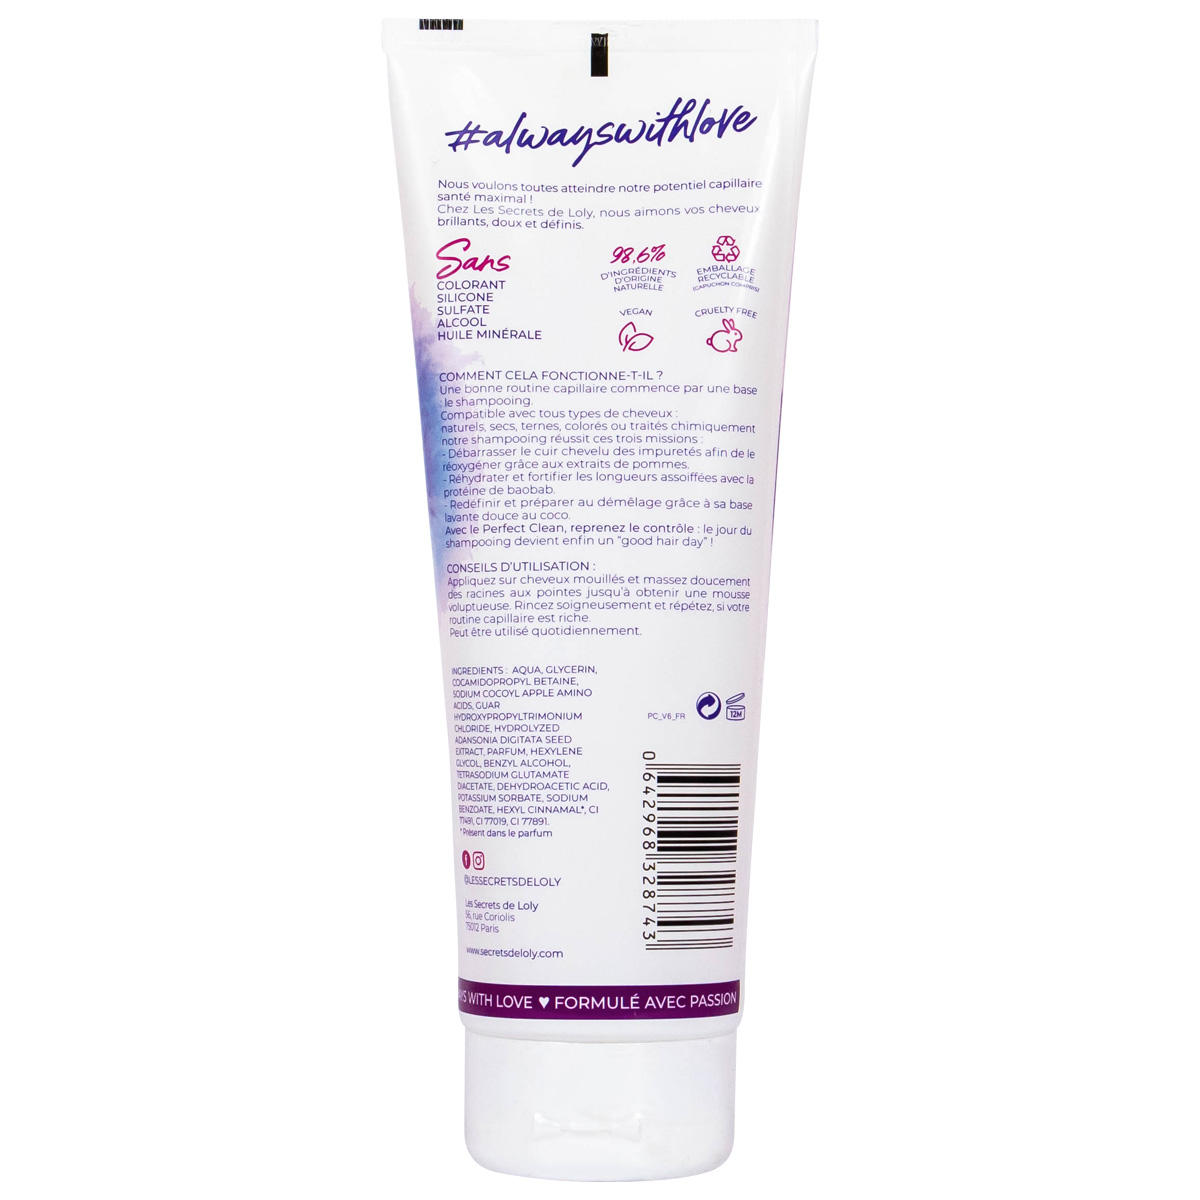 Les secrets de Loly Perfect Clean Shampooing 250 ml - 2